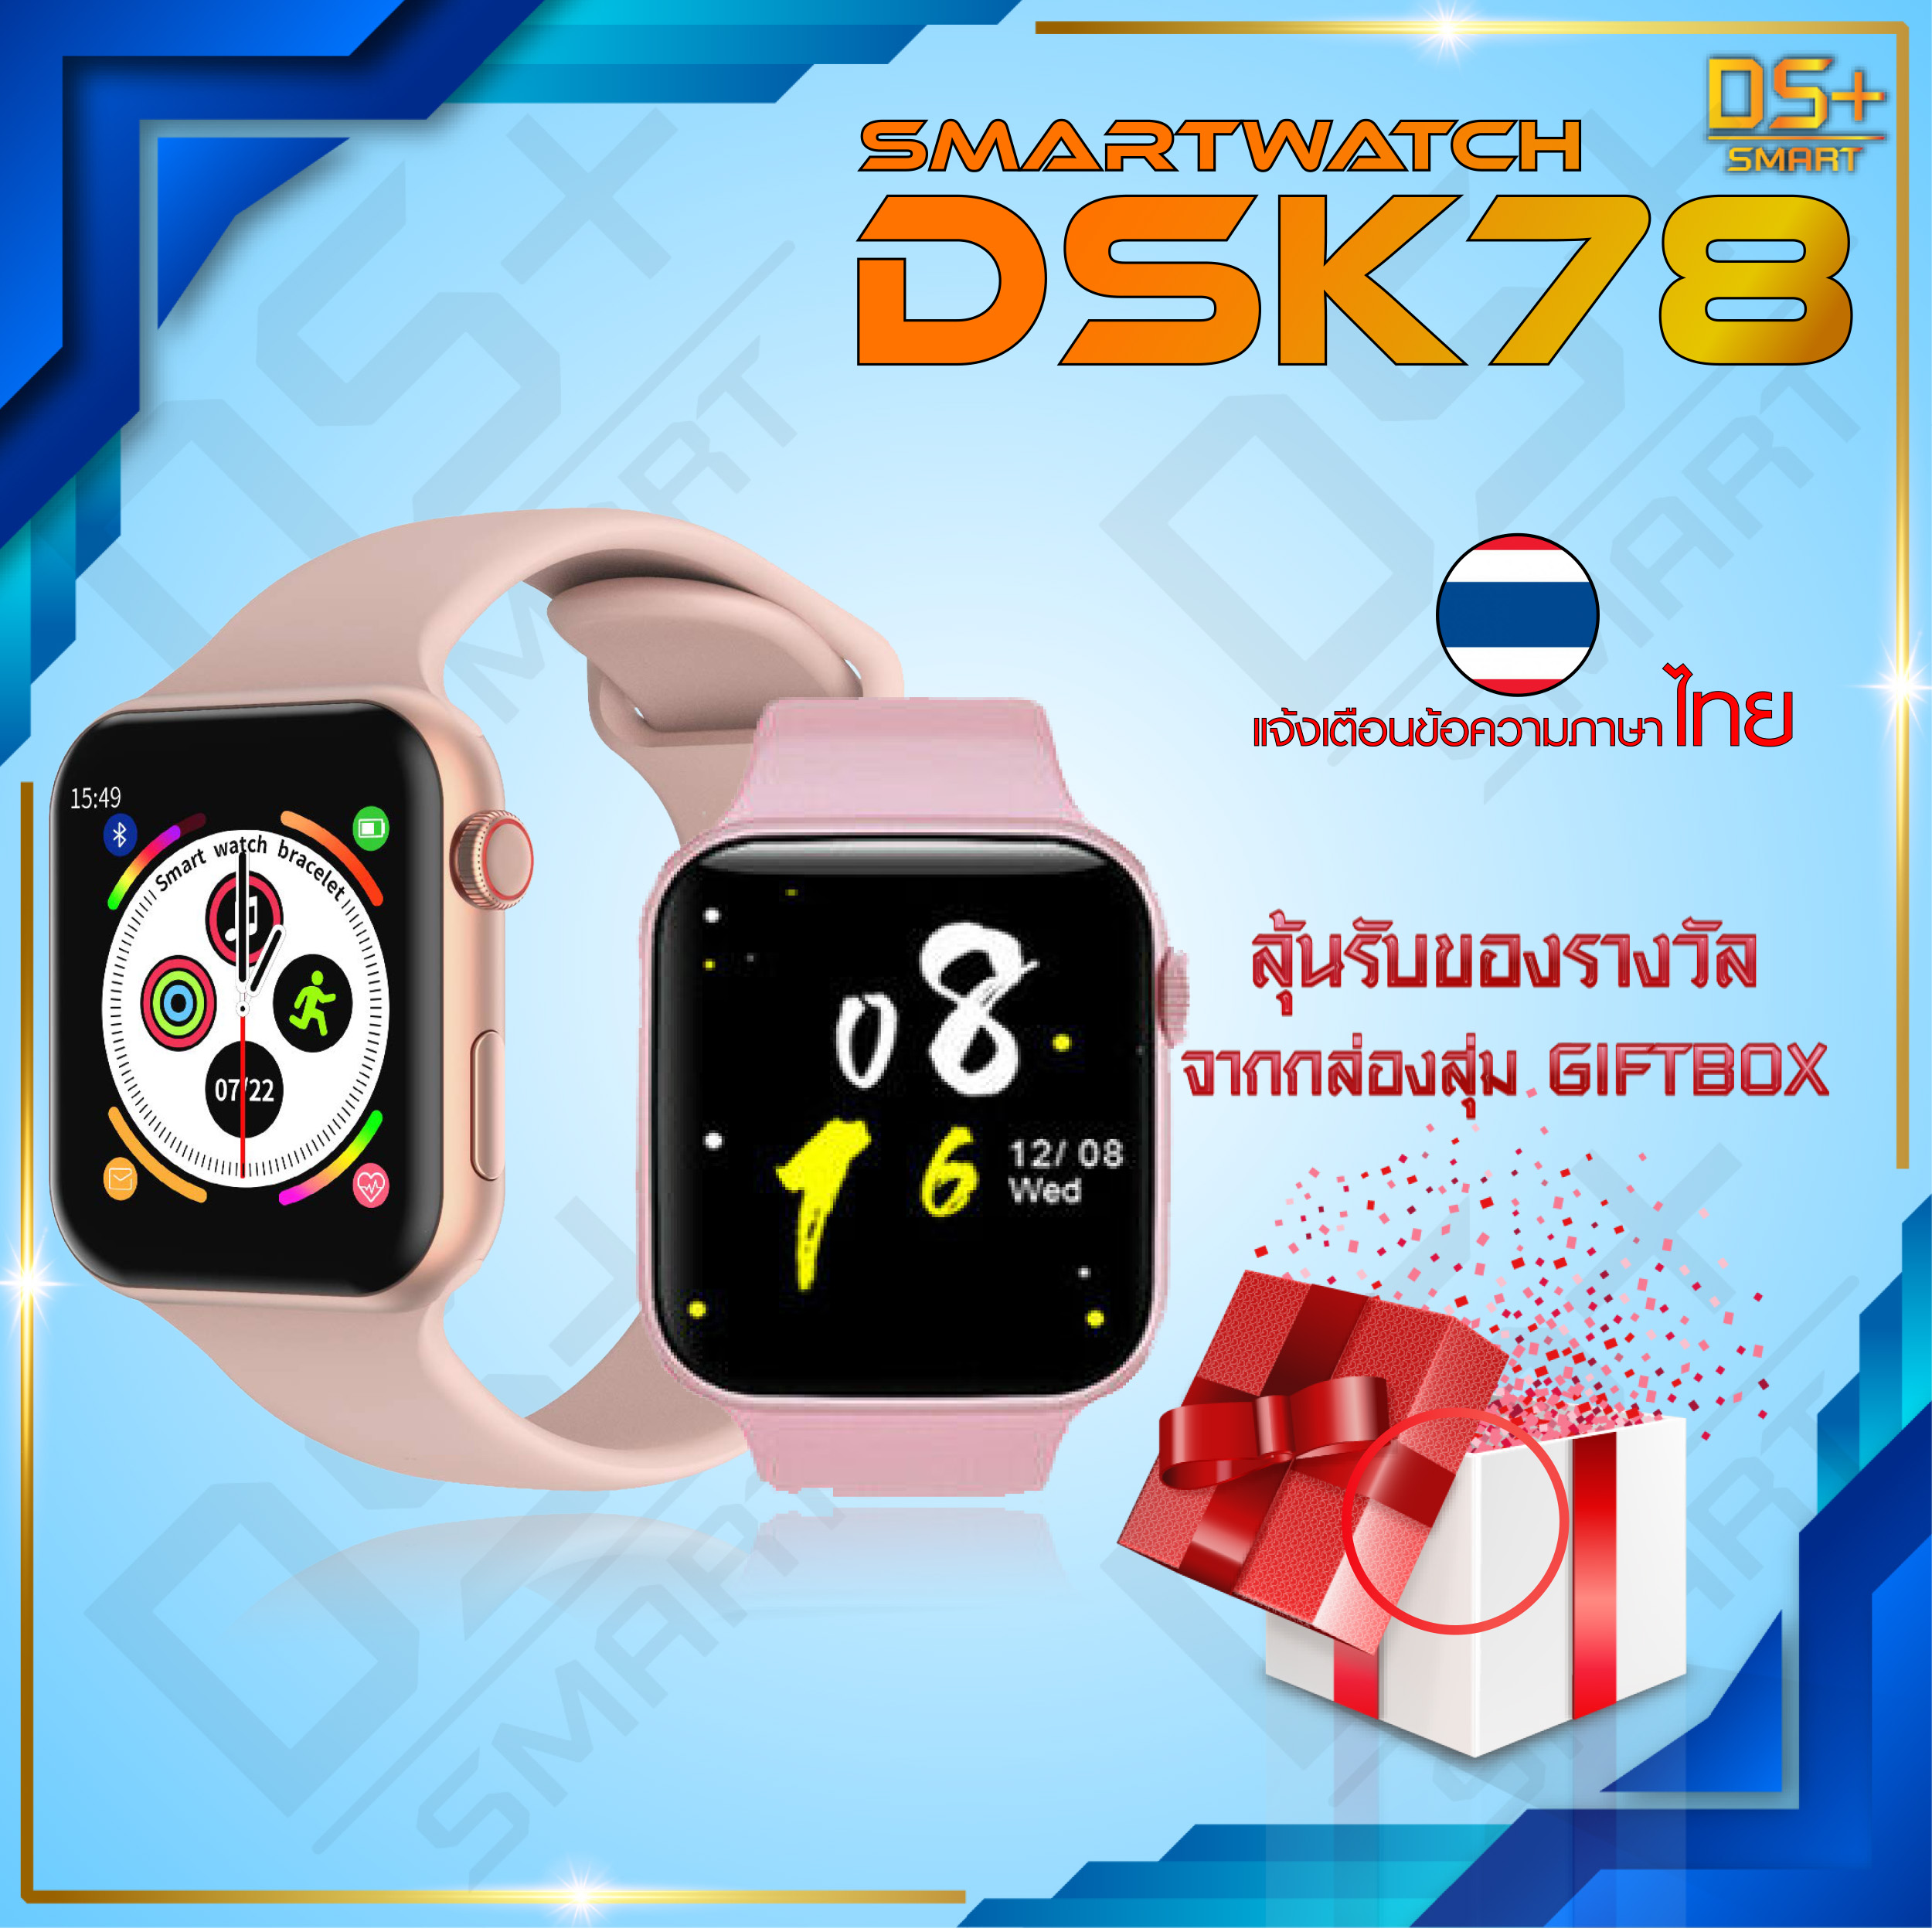 【พร้อมส่ง】Smart Watch CK78 นาฬิกาสมาทวอช นาฬิกาสมาร์ทวอทช์ รุ่น DSK78 [แจ้งเตือนไทยได้] นาฬิกาอัจฉริยะ นาฬิกาข้อมือ ใส่สบาย กันน้ำ IP67 นาฬิกา